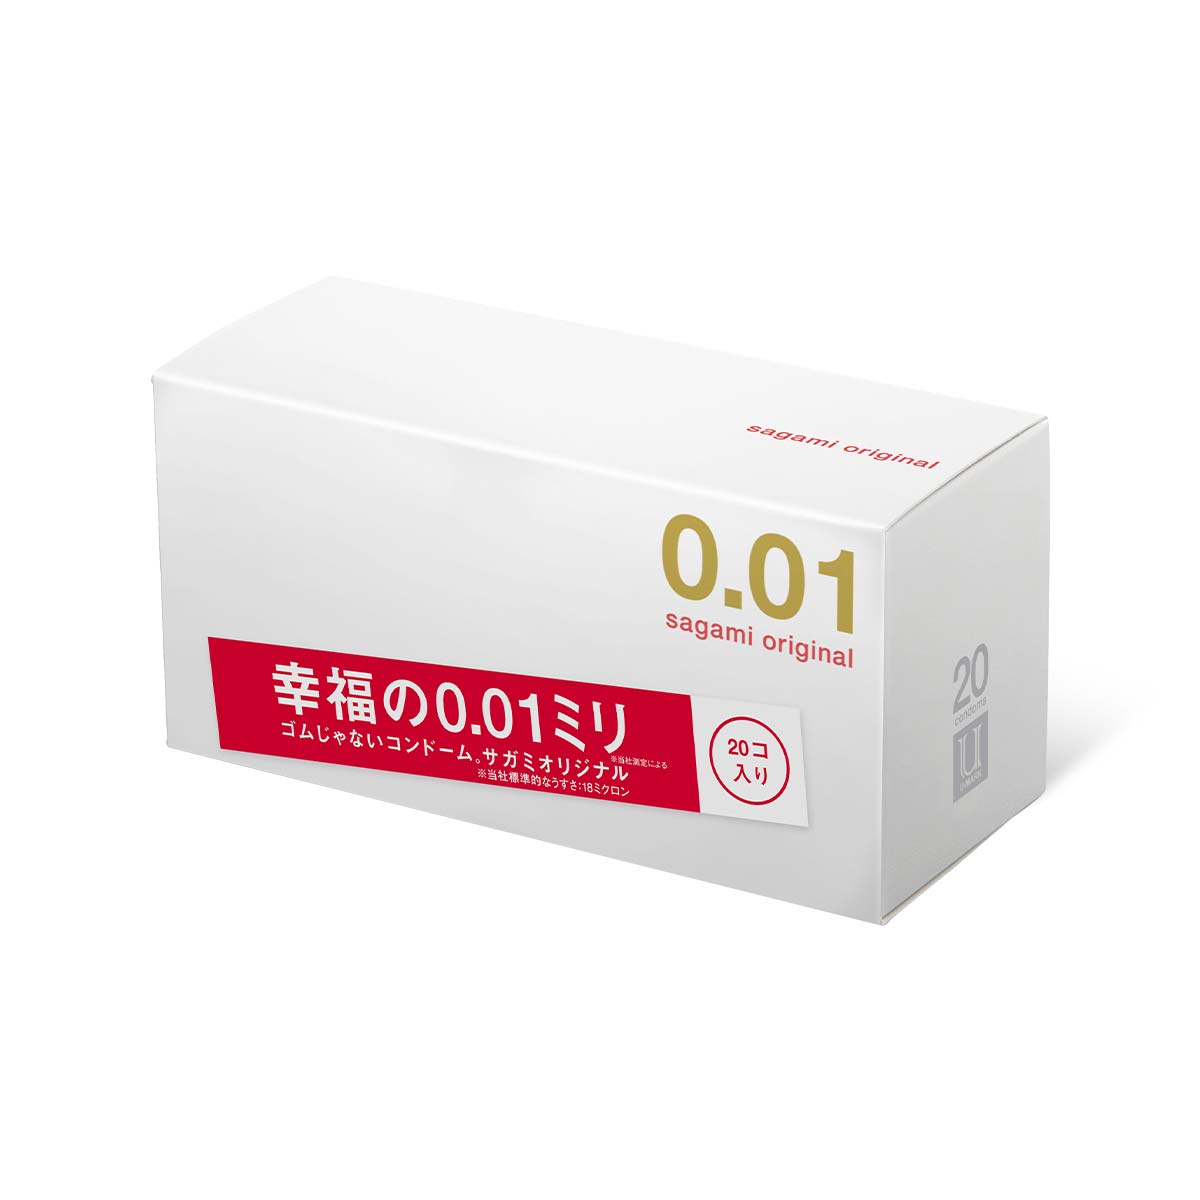 Sagami Original 0.01 20's Pack PU Condom-p_1